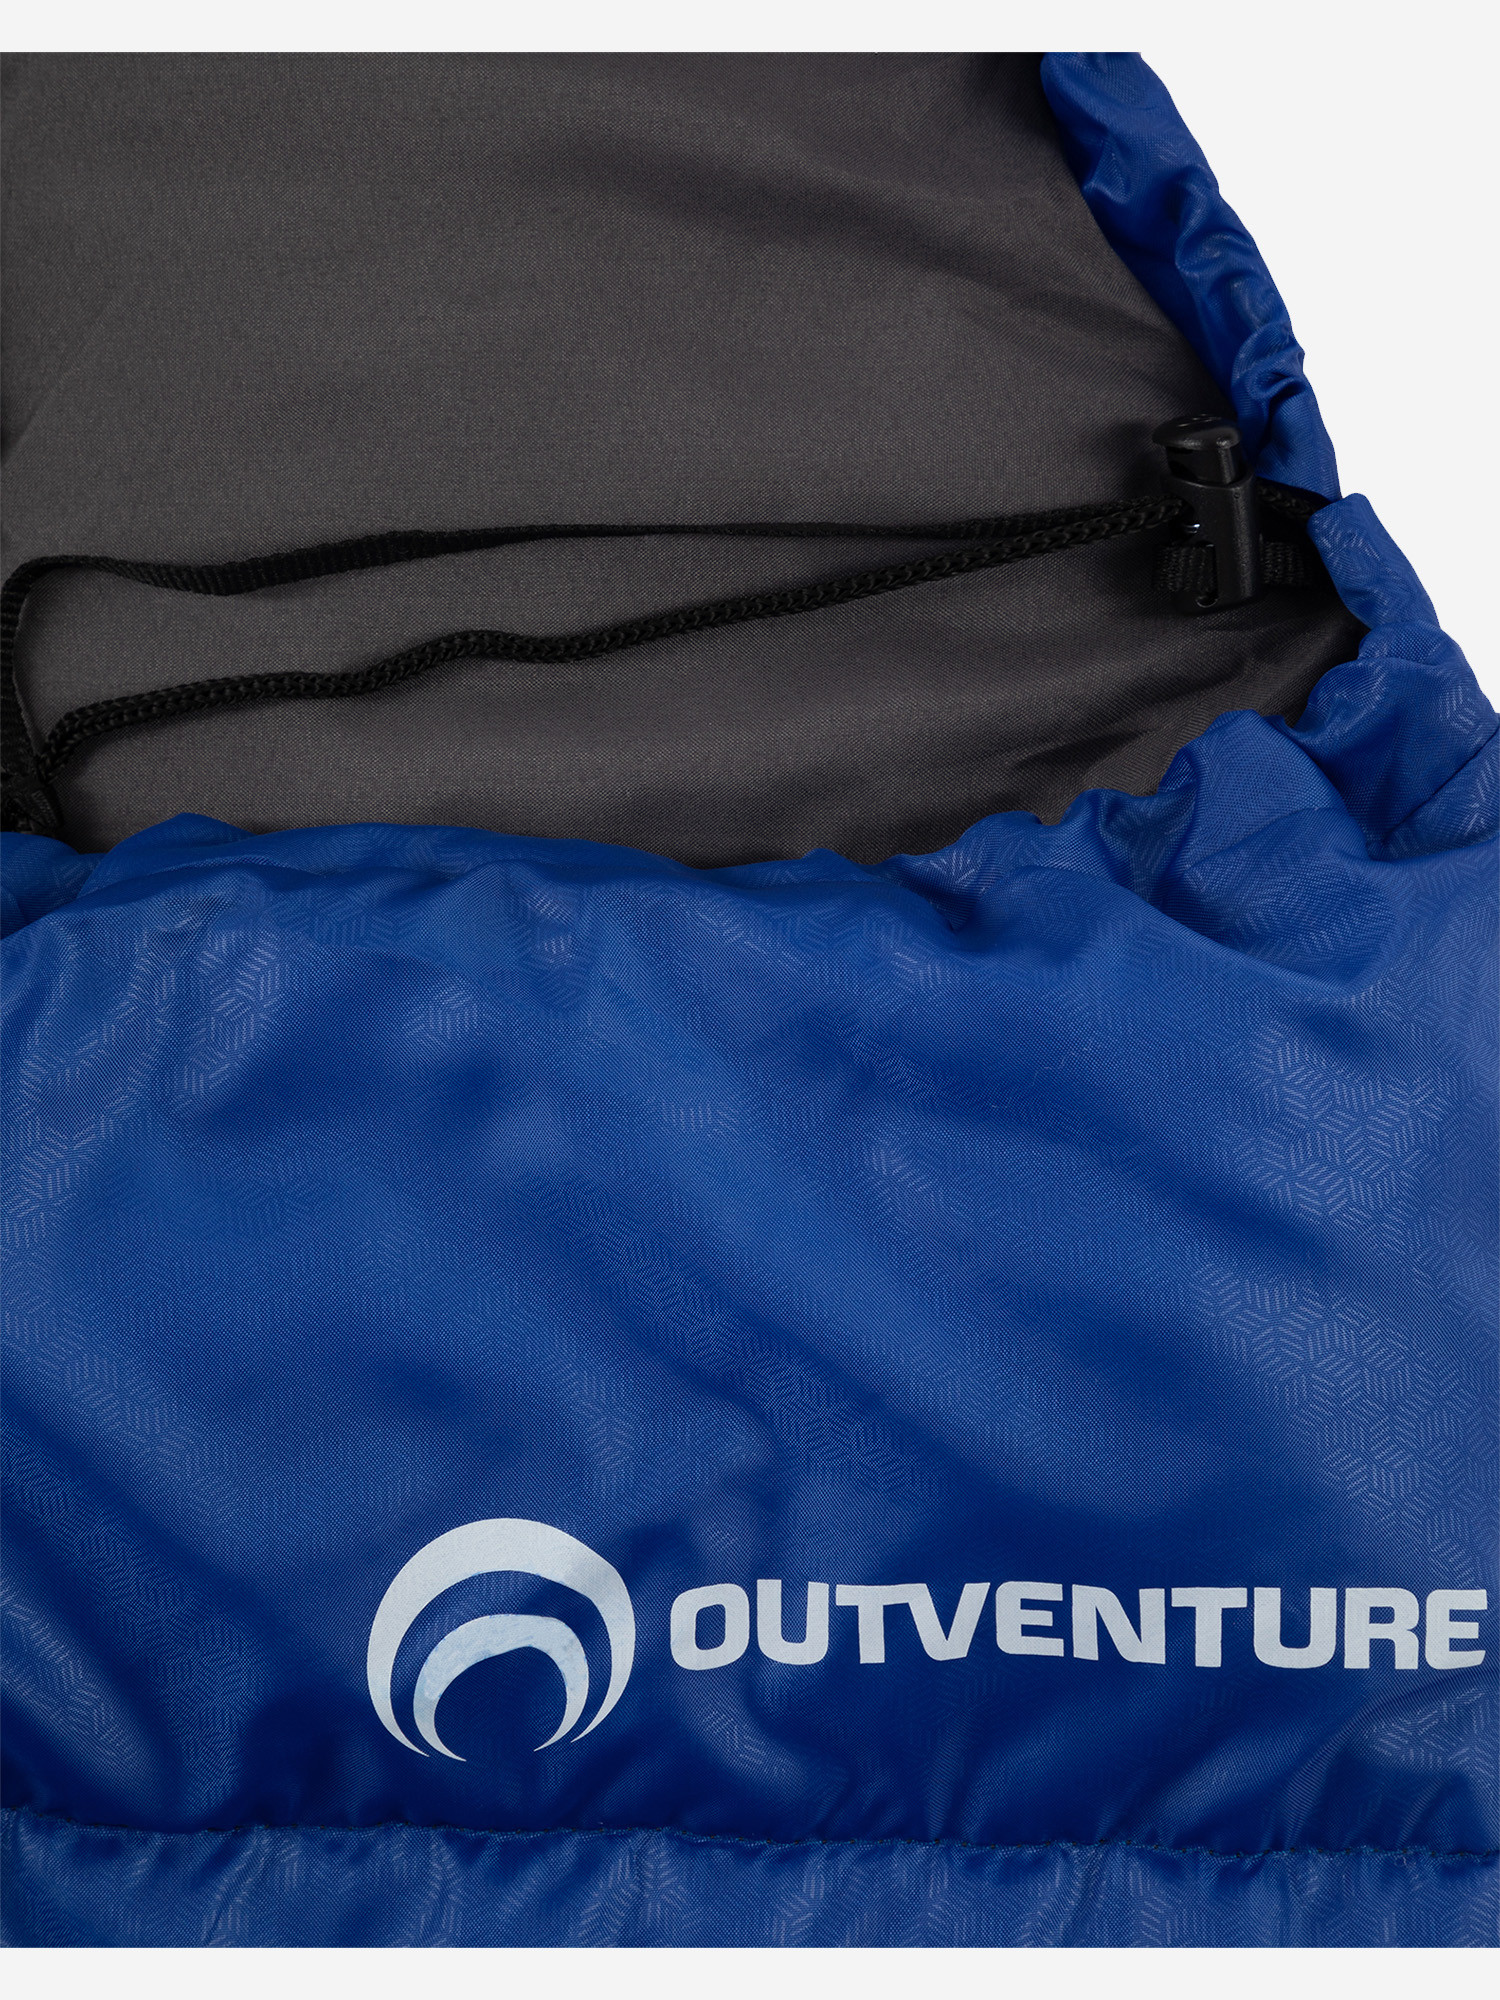 Спальный мешок Outventure Toronto +10 правосторонний